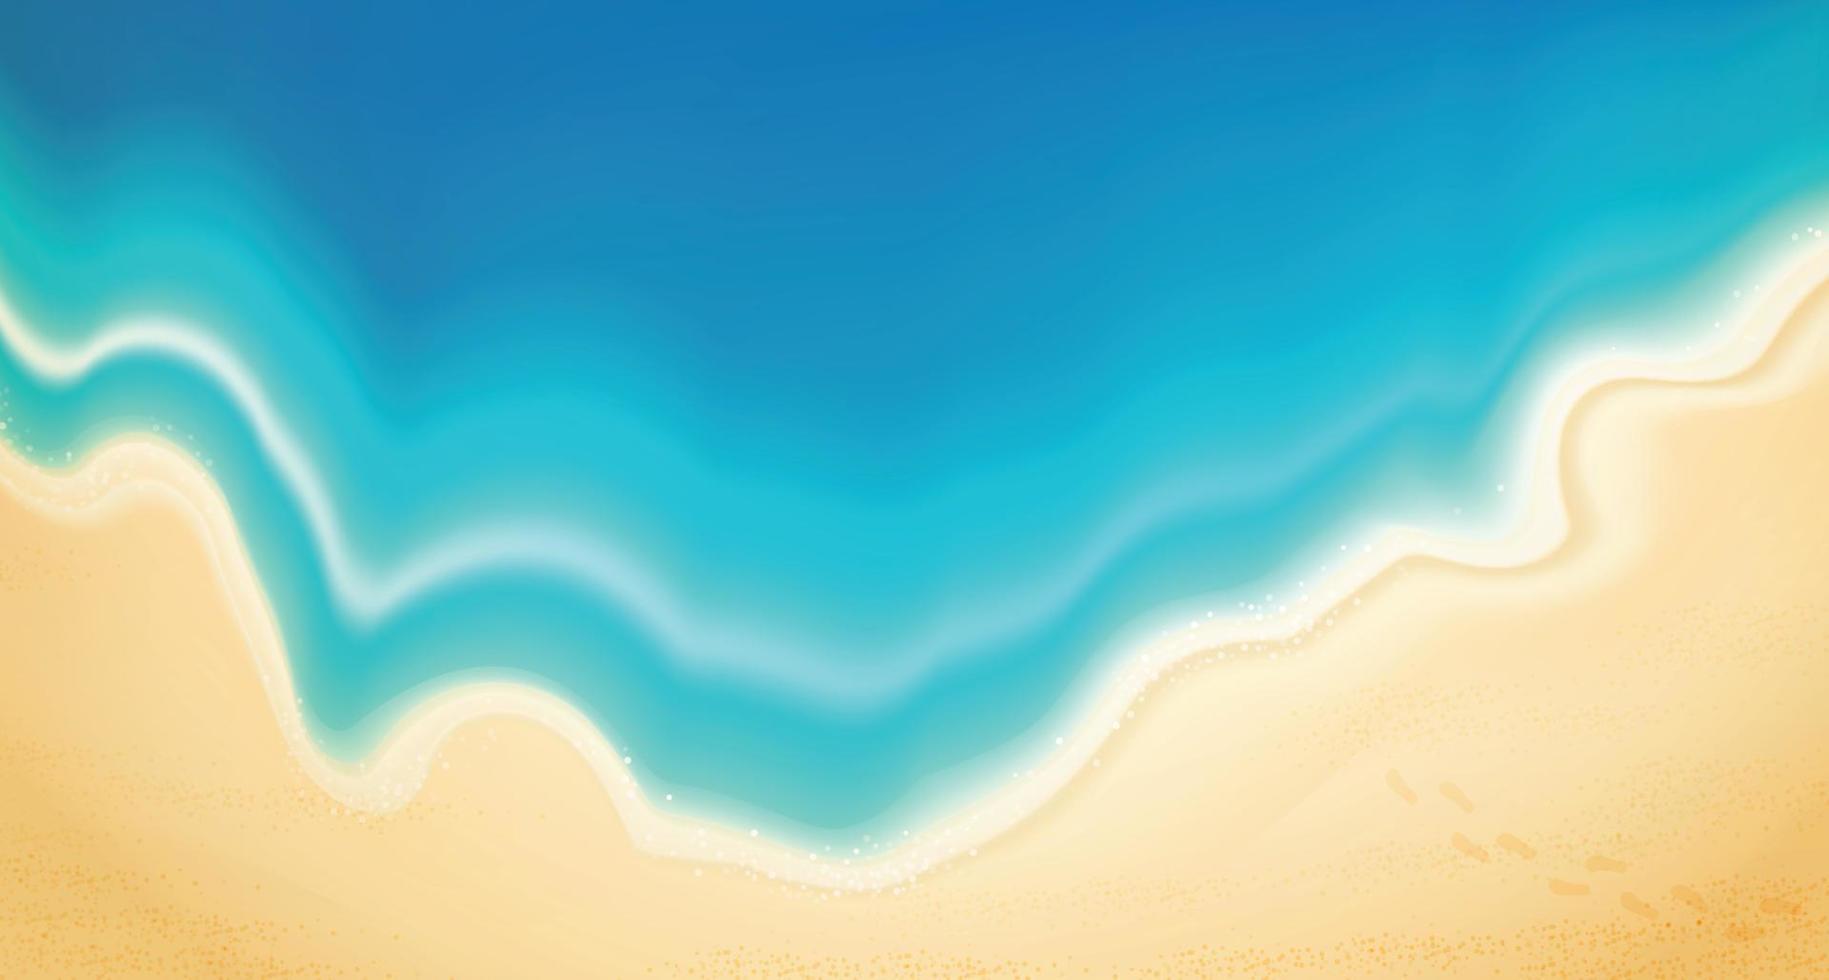 verano de vista superior con equipo de juego de agua colocado en la playa. Fondo de playa con anillo de natación, sandalias, sombrillas, pelotas, estrellas de mar y mar. ilustración vectorial. vector